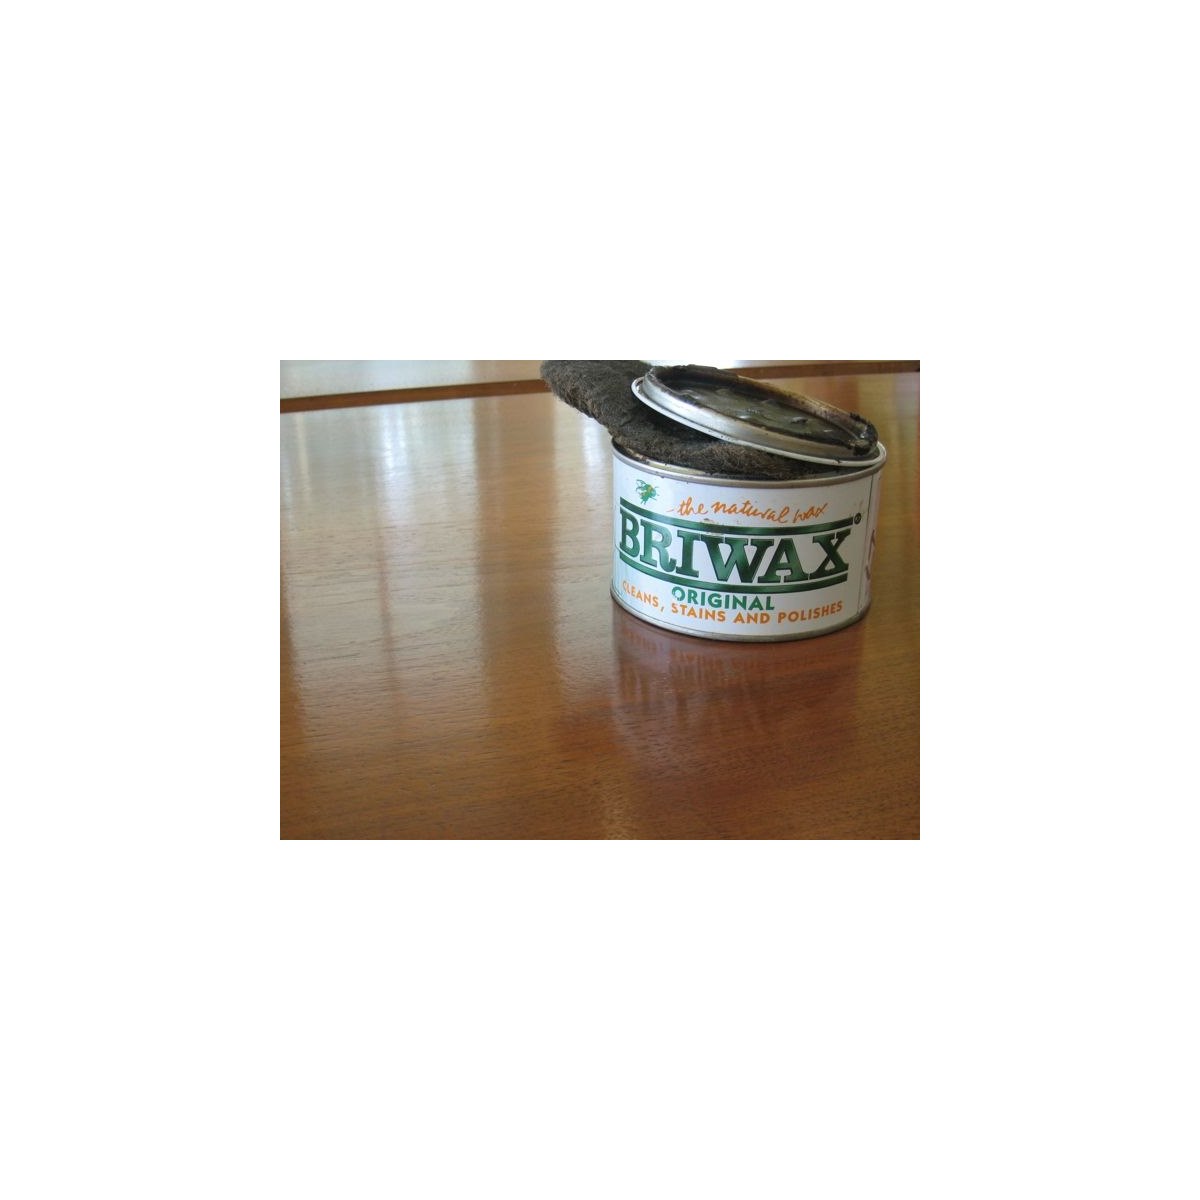 Briwax Original Wax Polish - Restorate